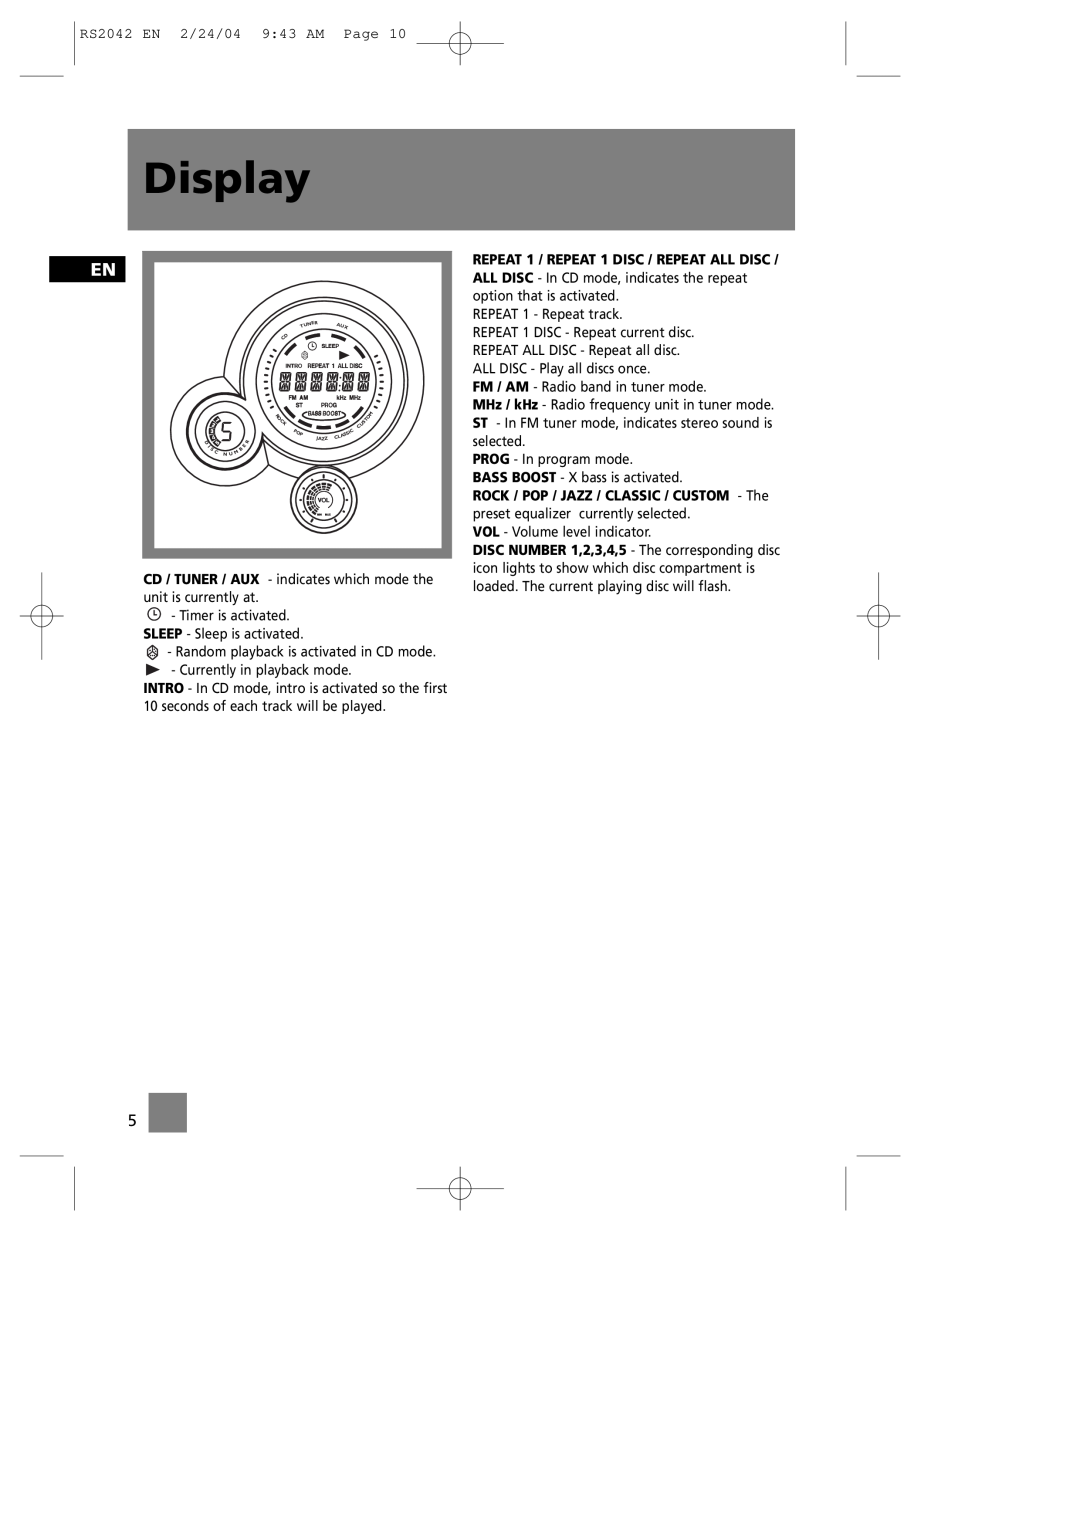 RCA RS2042 manual Display 